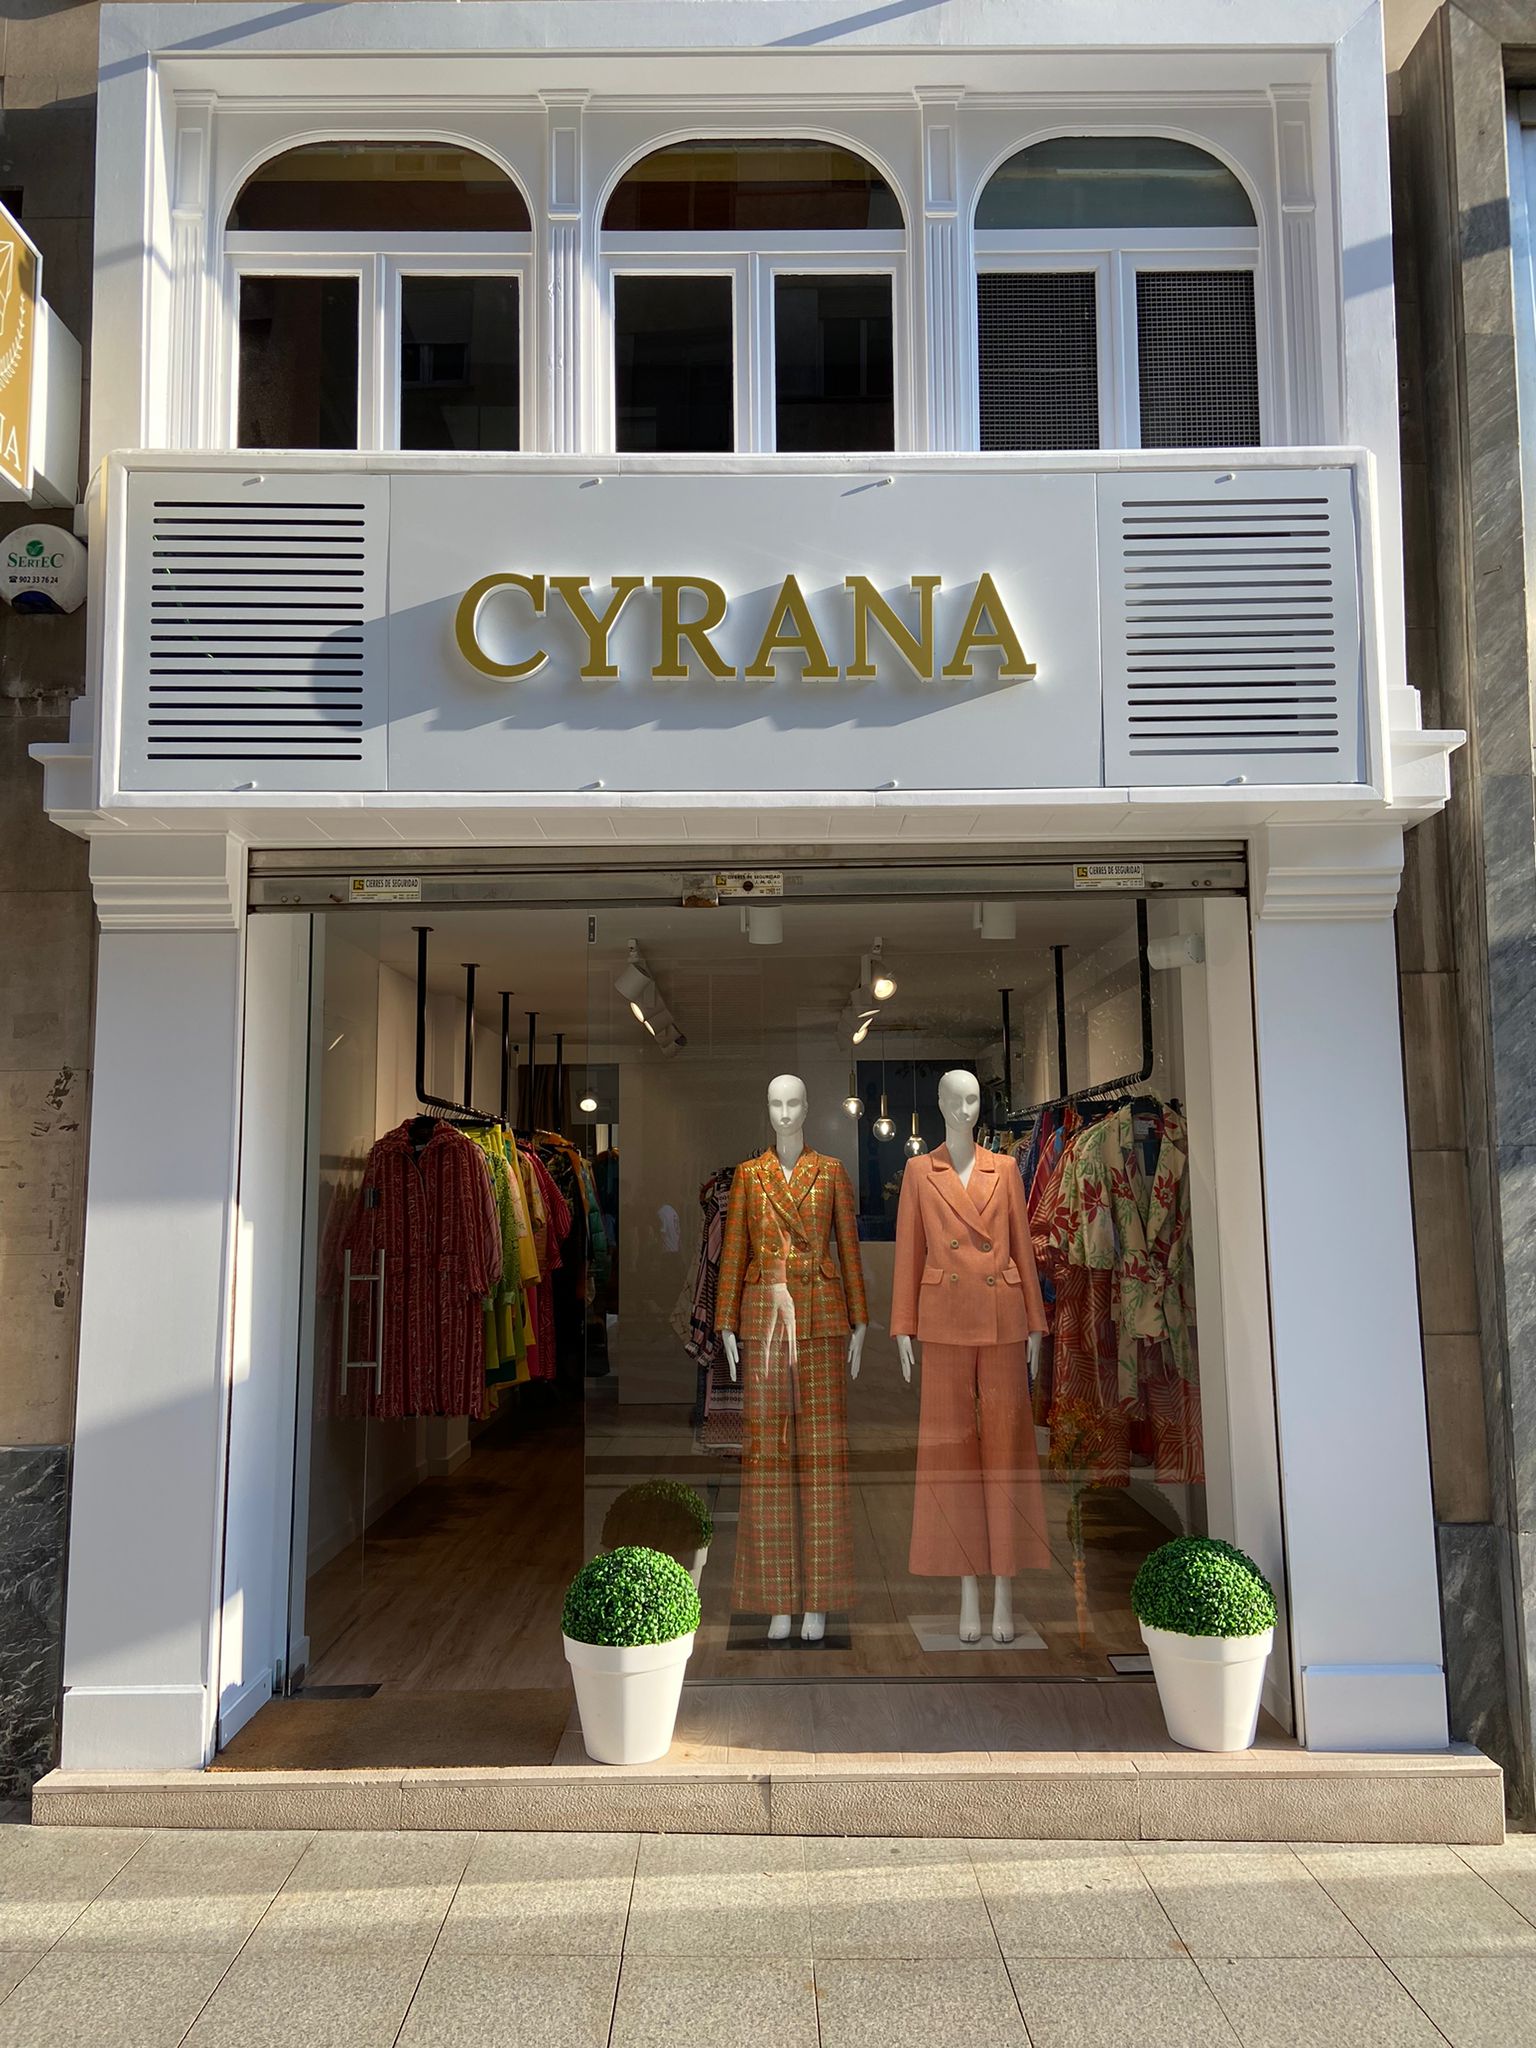 CYRANA sigue creciendo en España con su primera tienda insignia en Santander